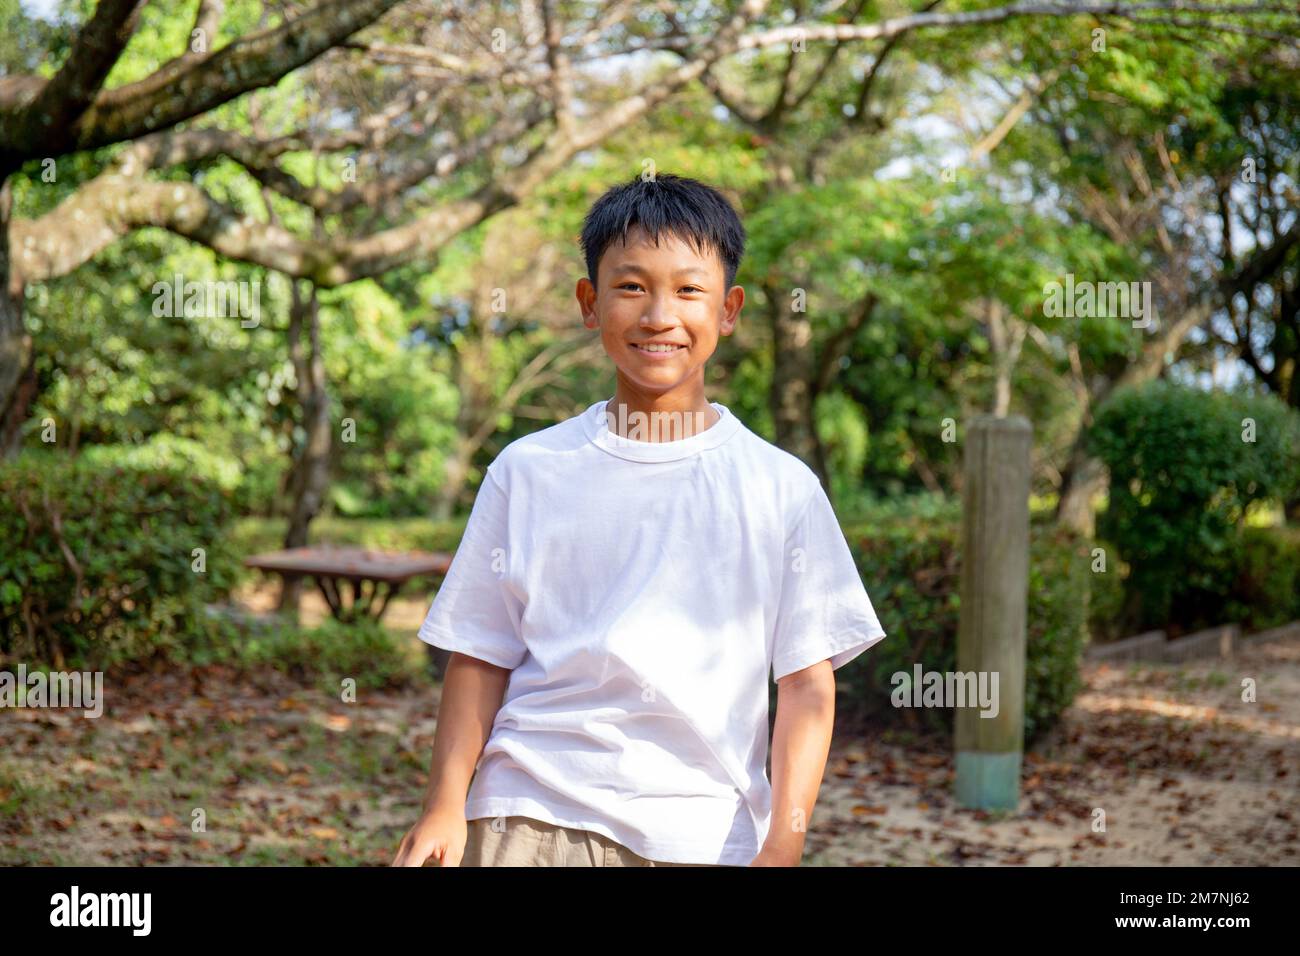 Ein 13-jähriger Junge in einem weißen teeshirt, lächelnd, draußen in einem Park. Stockfoto